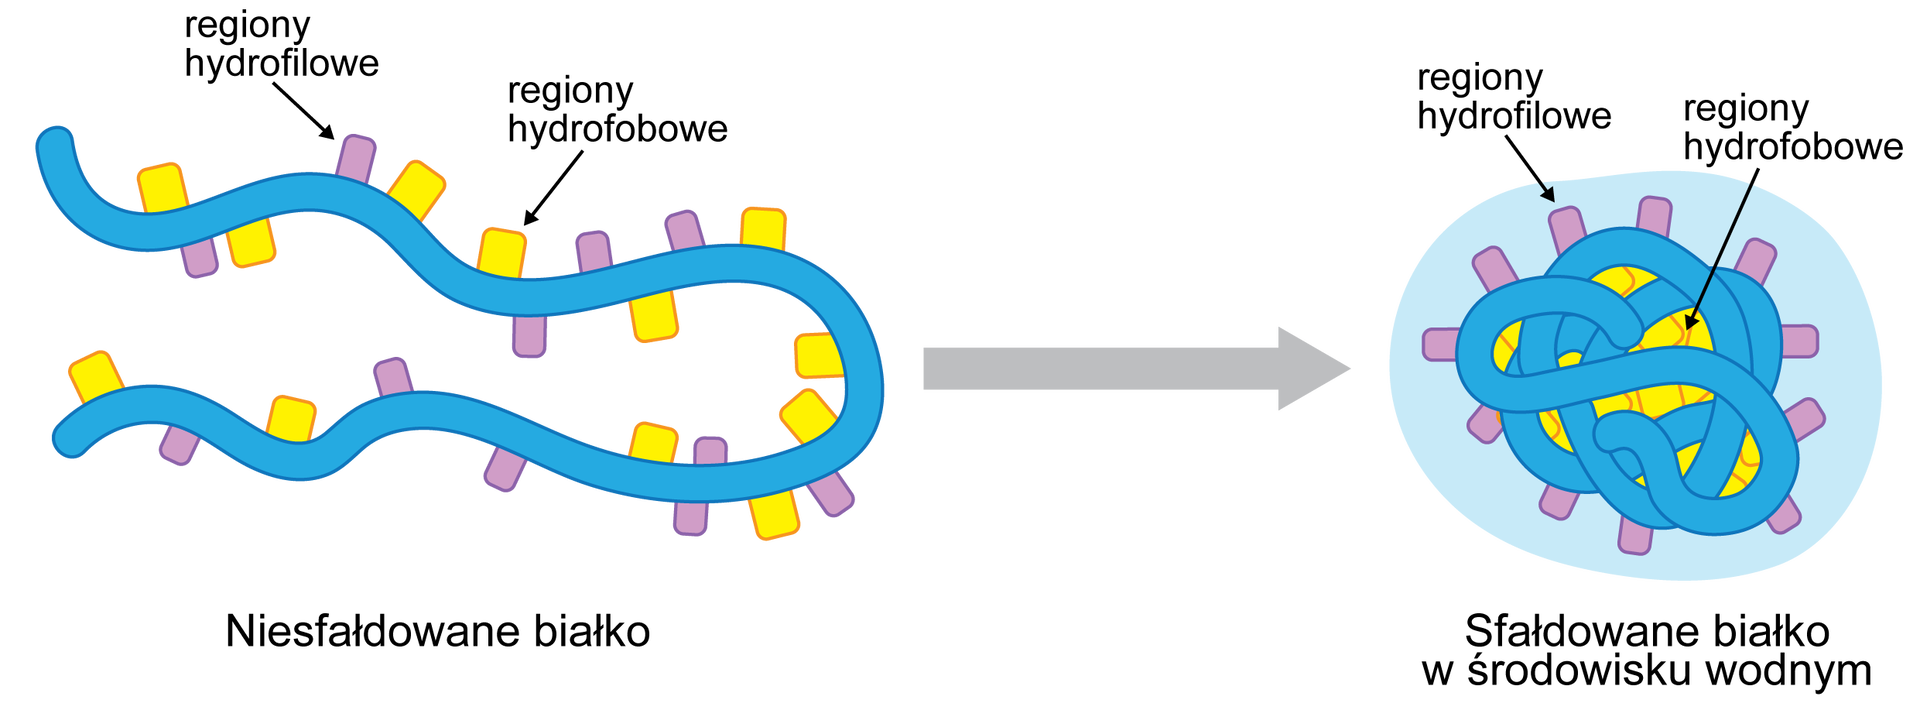 Na grafice przedstawiono niesfałdowane białko oraz białko w środowisku wodnym, w którym uległo sfałdowaniu - tworzą strukturę zwiniętych lin. Na powierzchni białka wyrostki, które oznaczają regiony hydrofobowe i hydrofilowe. W sfałdowanym białku regiony hydrofilowe występują na zewnątrz struktury, a hydrofobowe w środku. W niesfałdowanym białku obok siebie. Pomiędzy niesfałdowanym i sfałdowanym białkiem jest strzałka skierowana w prawo.  